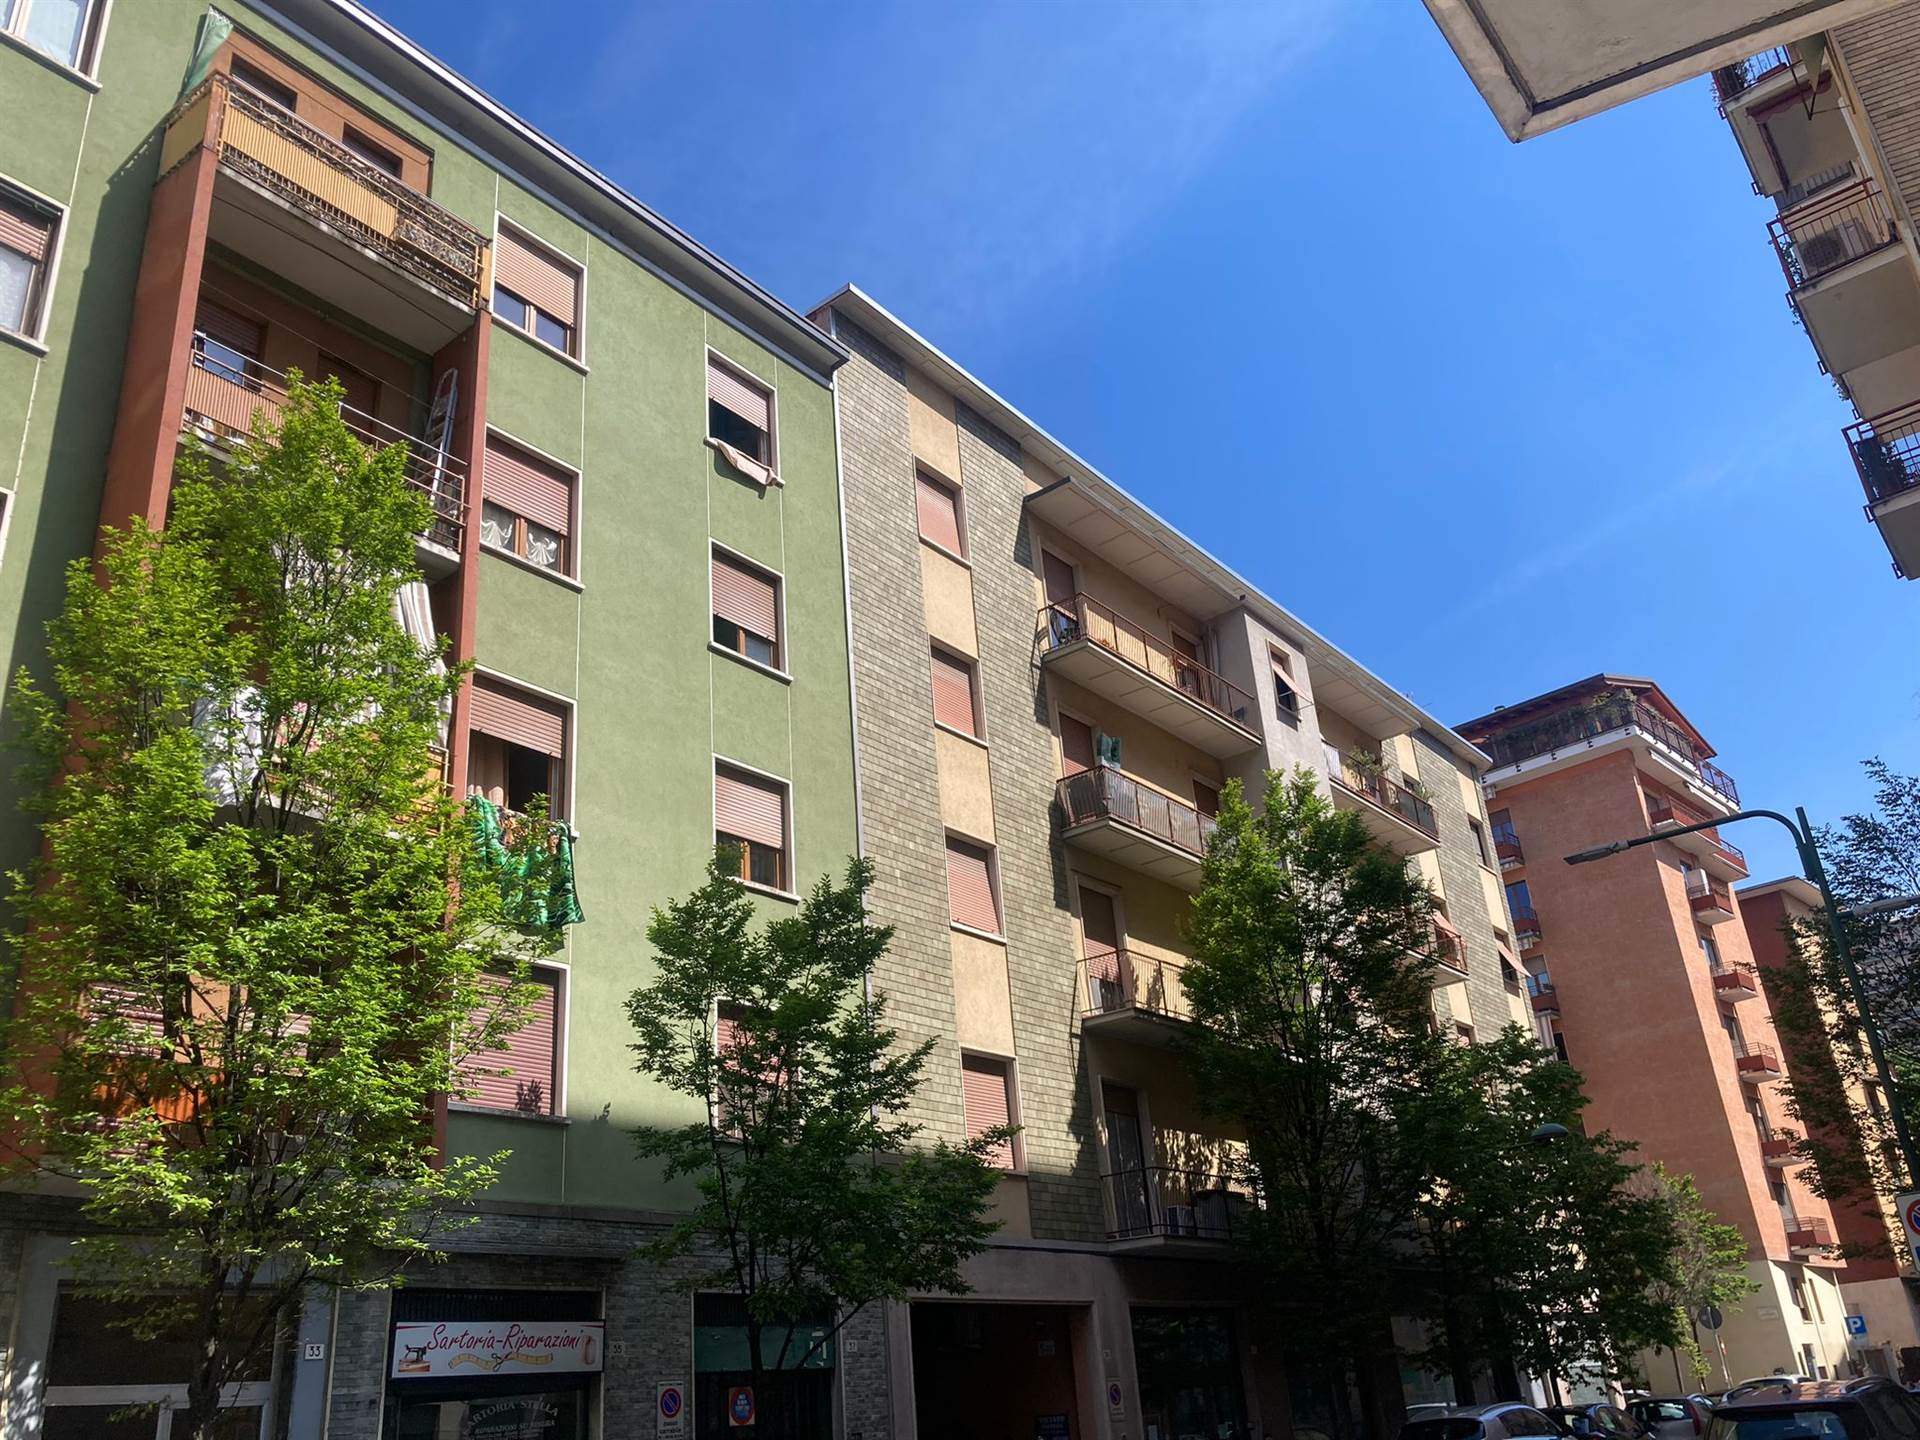 Rif A/625 L'Abbruzzi Gruppo Immobiliare propone in Sesto San Giovanni, zona Rondò, via Modena a pochi passi dalla fermata della metropolitana, 